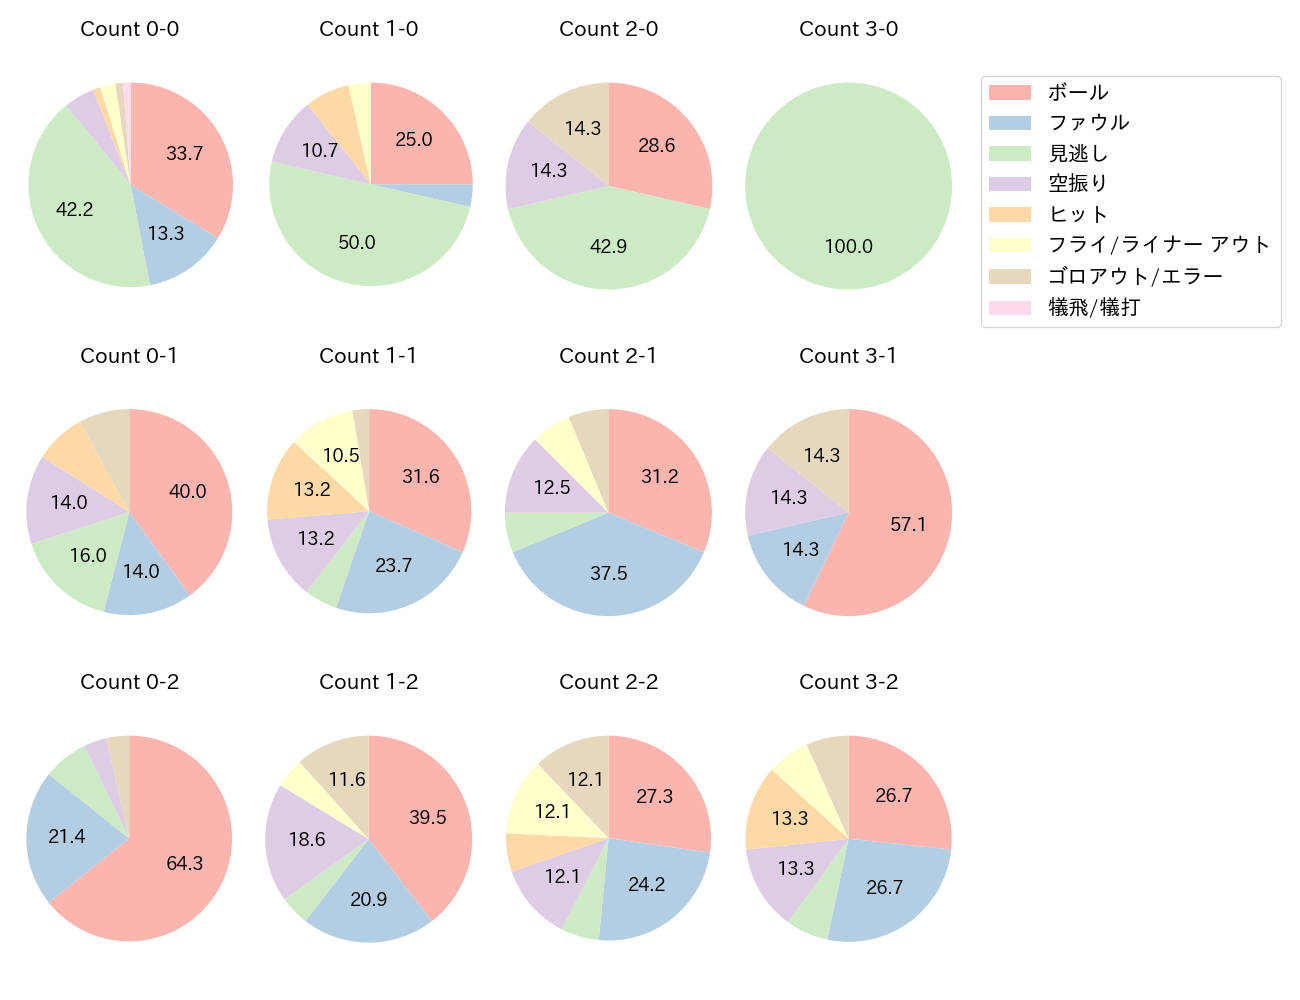 梅野 隆太郎の球数分布(2021年6月)